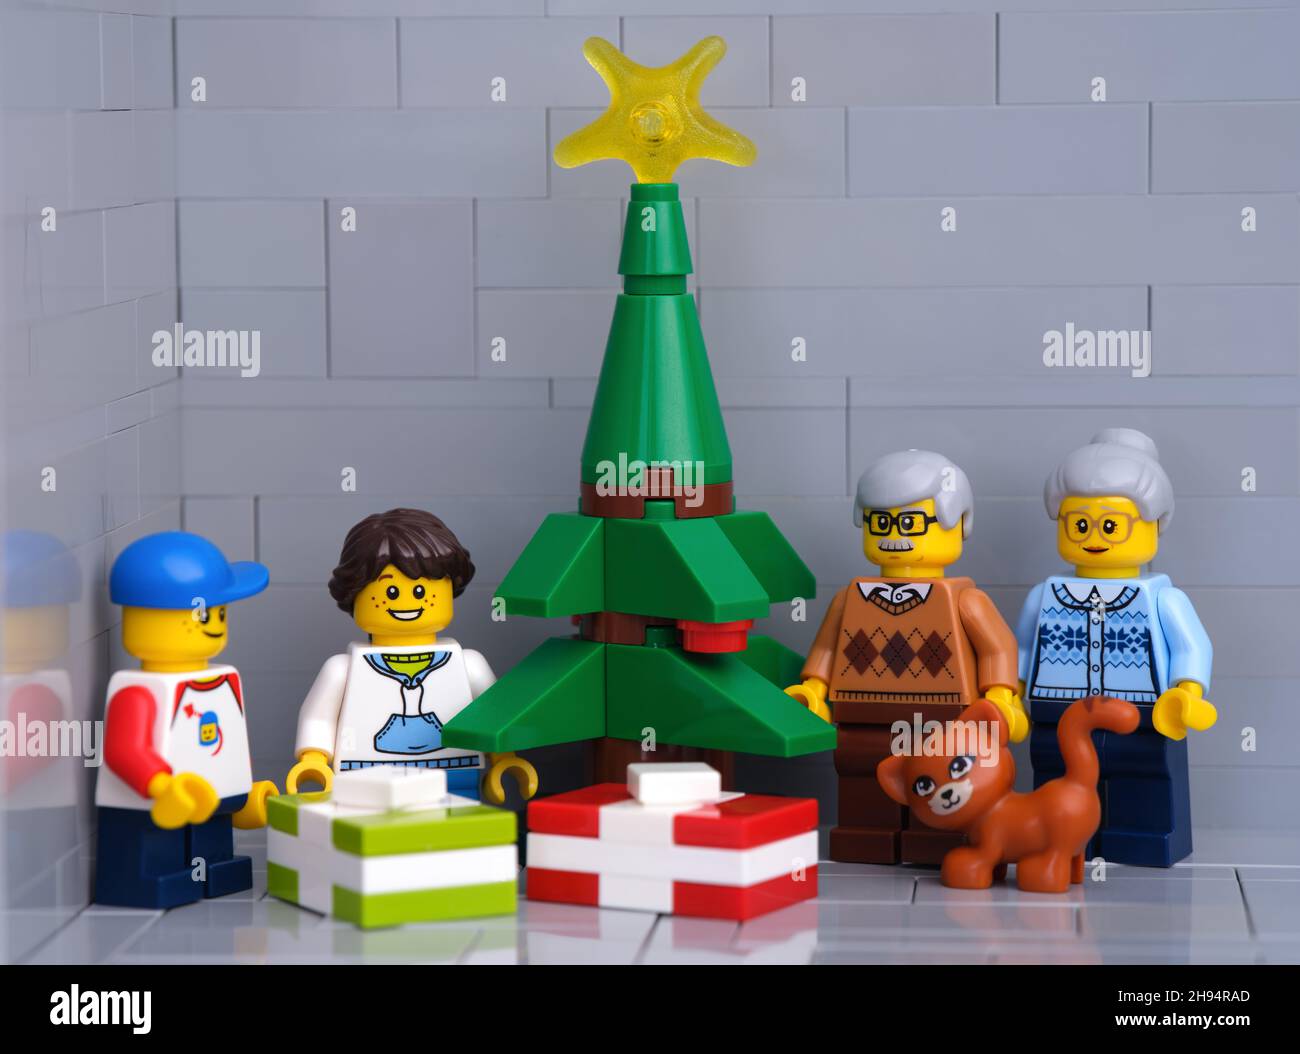 Tambow, Russische Föderation - 01. Dezember 2021 Lego-Großeltern, Enkel und Katzenminifiguren stehen neben einem Weihnachtsbaum mit Geschenken Stockfoto